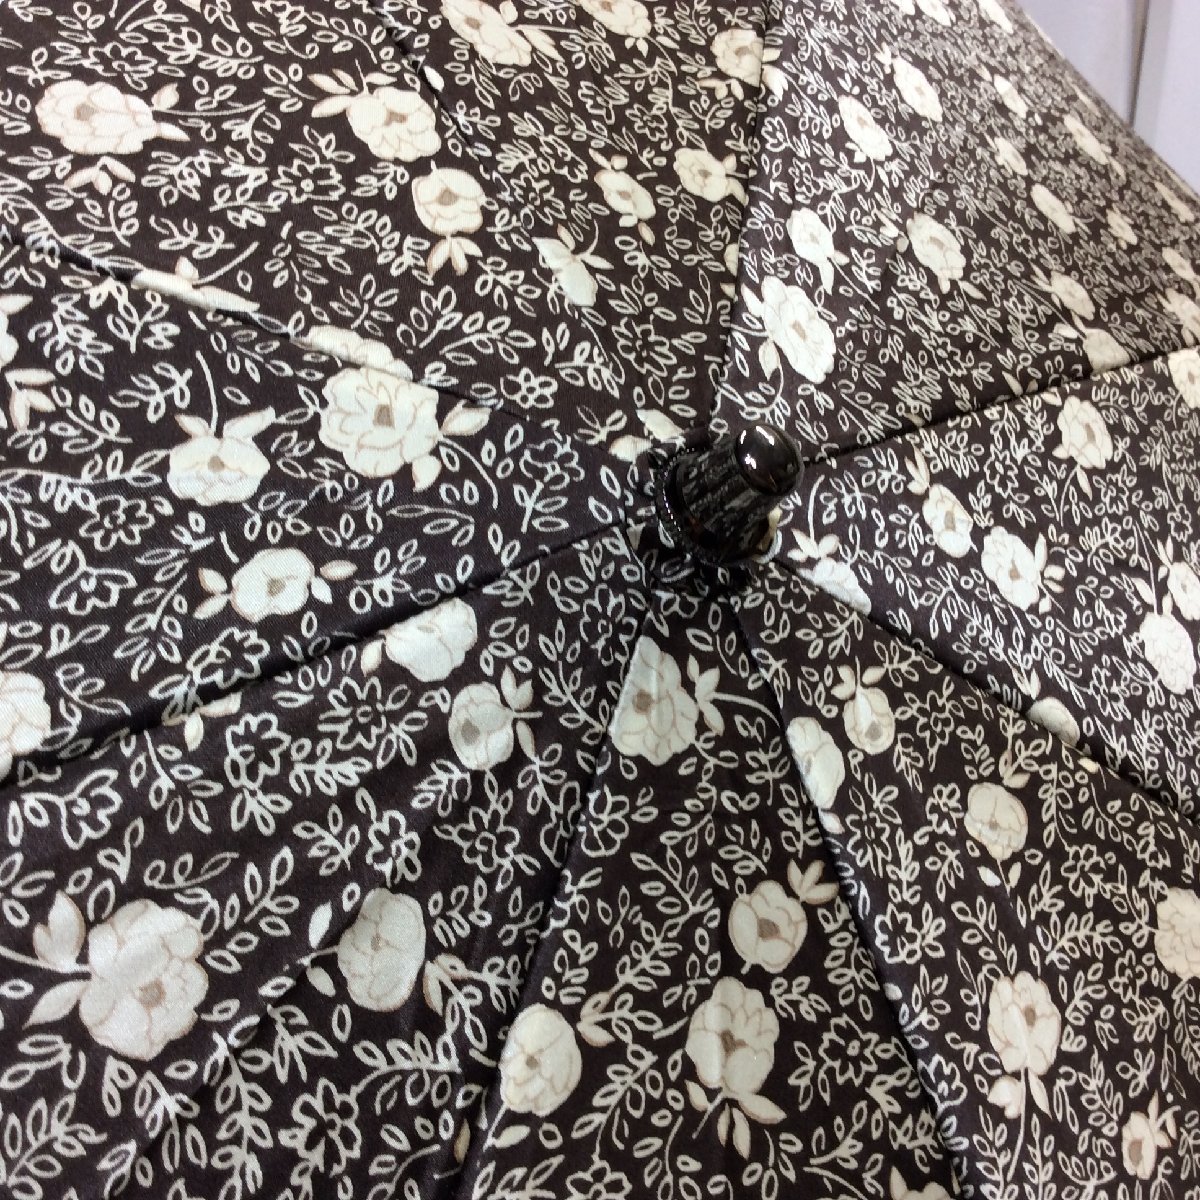  новый товар * складной зонт от солнца смешанный ассортимент магазин коммерческие материалы Brown цветок рисунок пакет имеется шелк материалы 